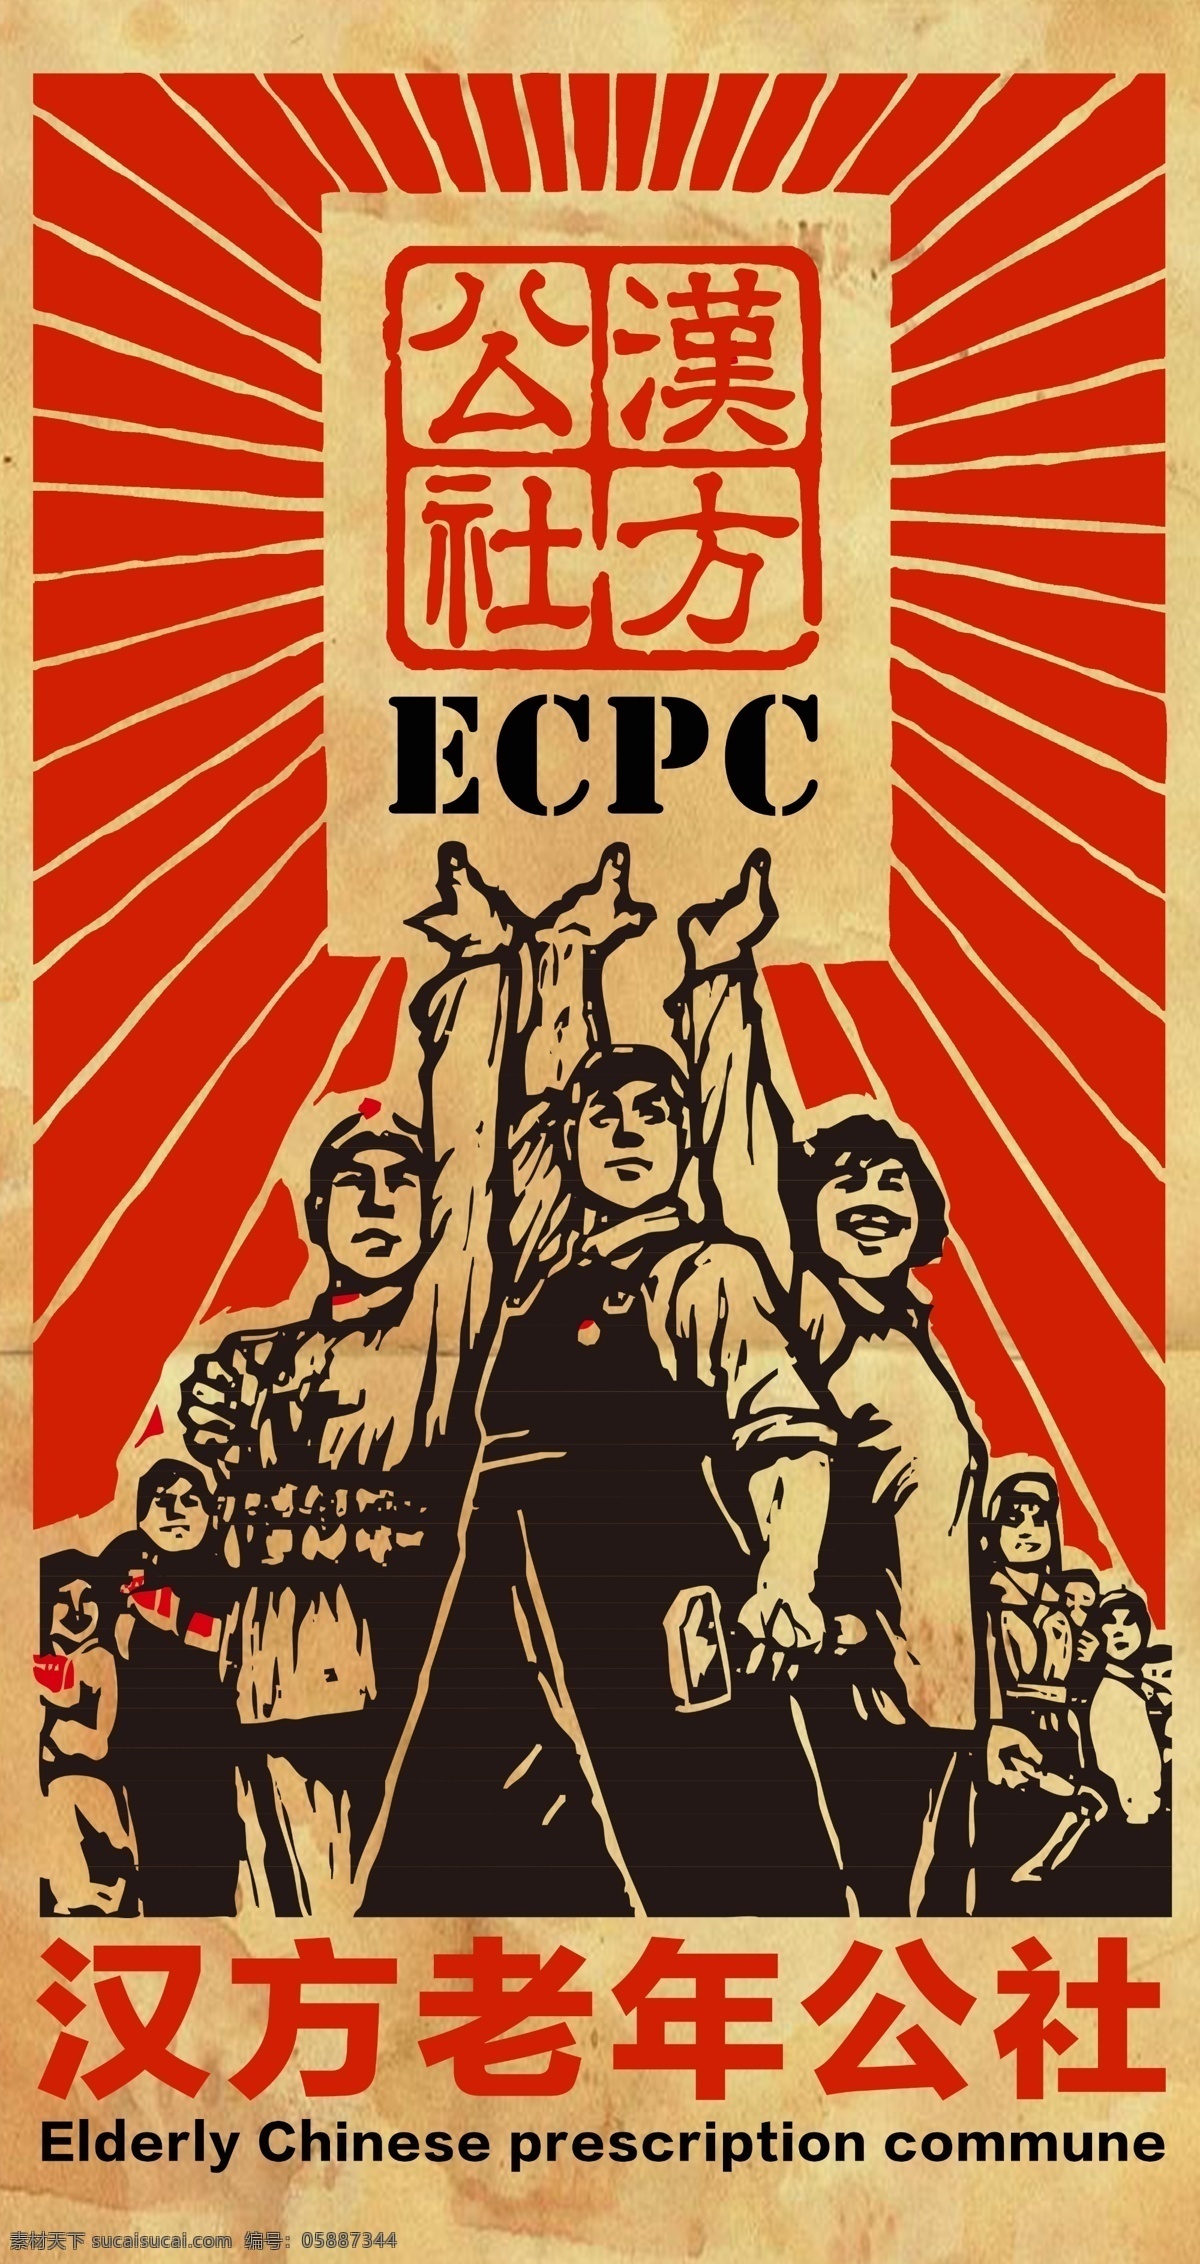 汉方 公社 妇女 复古 工人 红色 农民 士兵 太阳光 文革 宣传板 宣传画 大字报 毛泽东时期 原创设计 原创海报